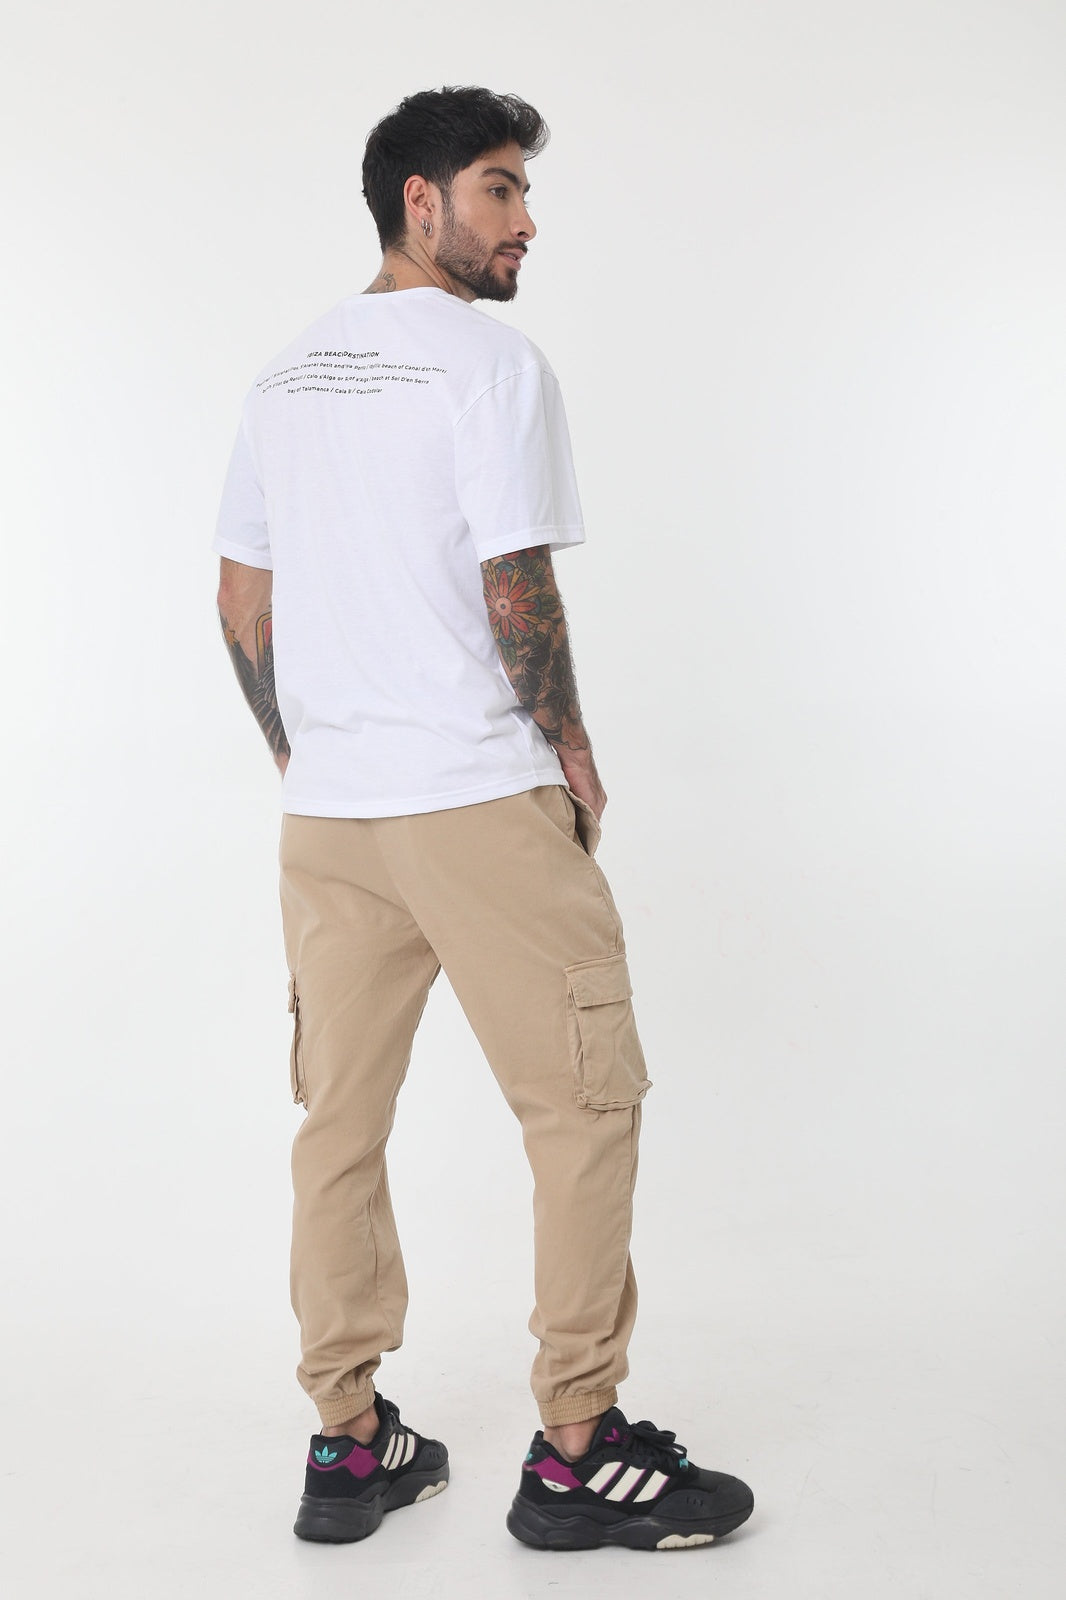 Camiseta blanca manga corta, cuello redondo, estampado en frente y en posterior para hombre